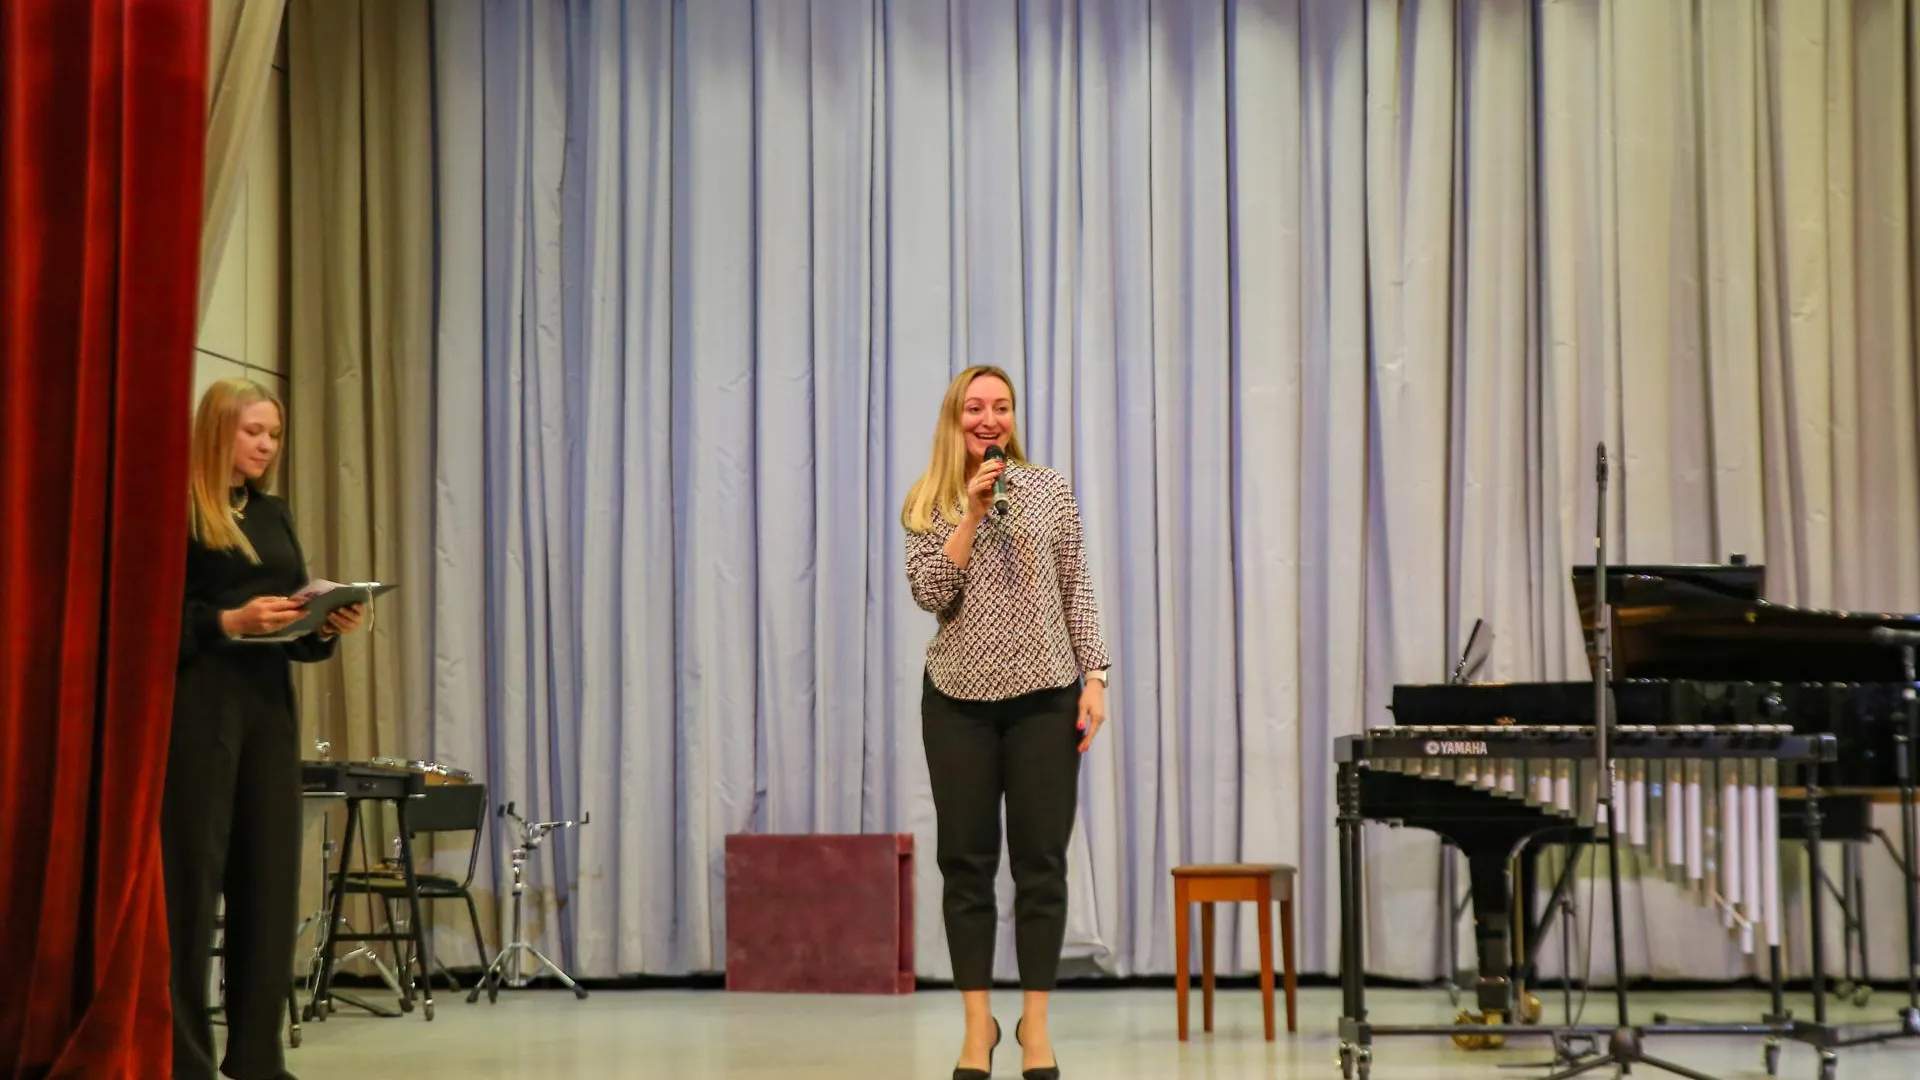 Концерт ударных инструментов прошел в центральной детской школе искусств в Химках